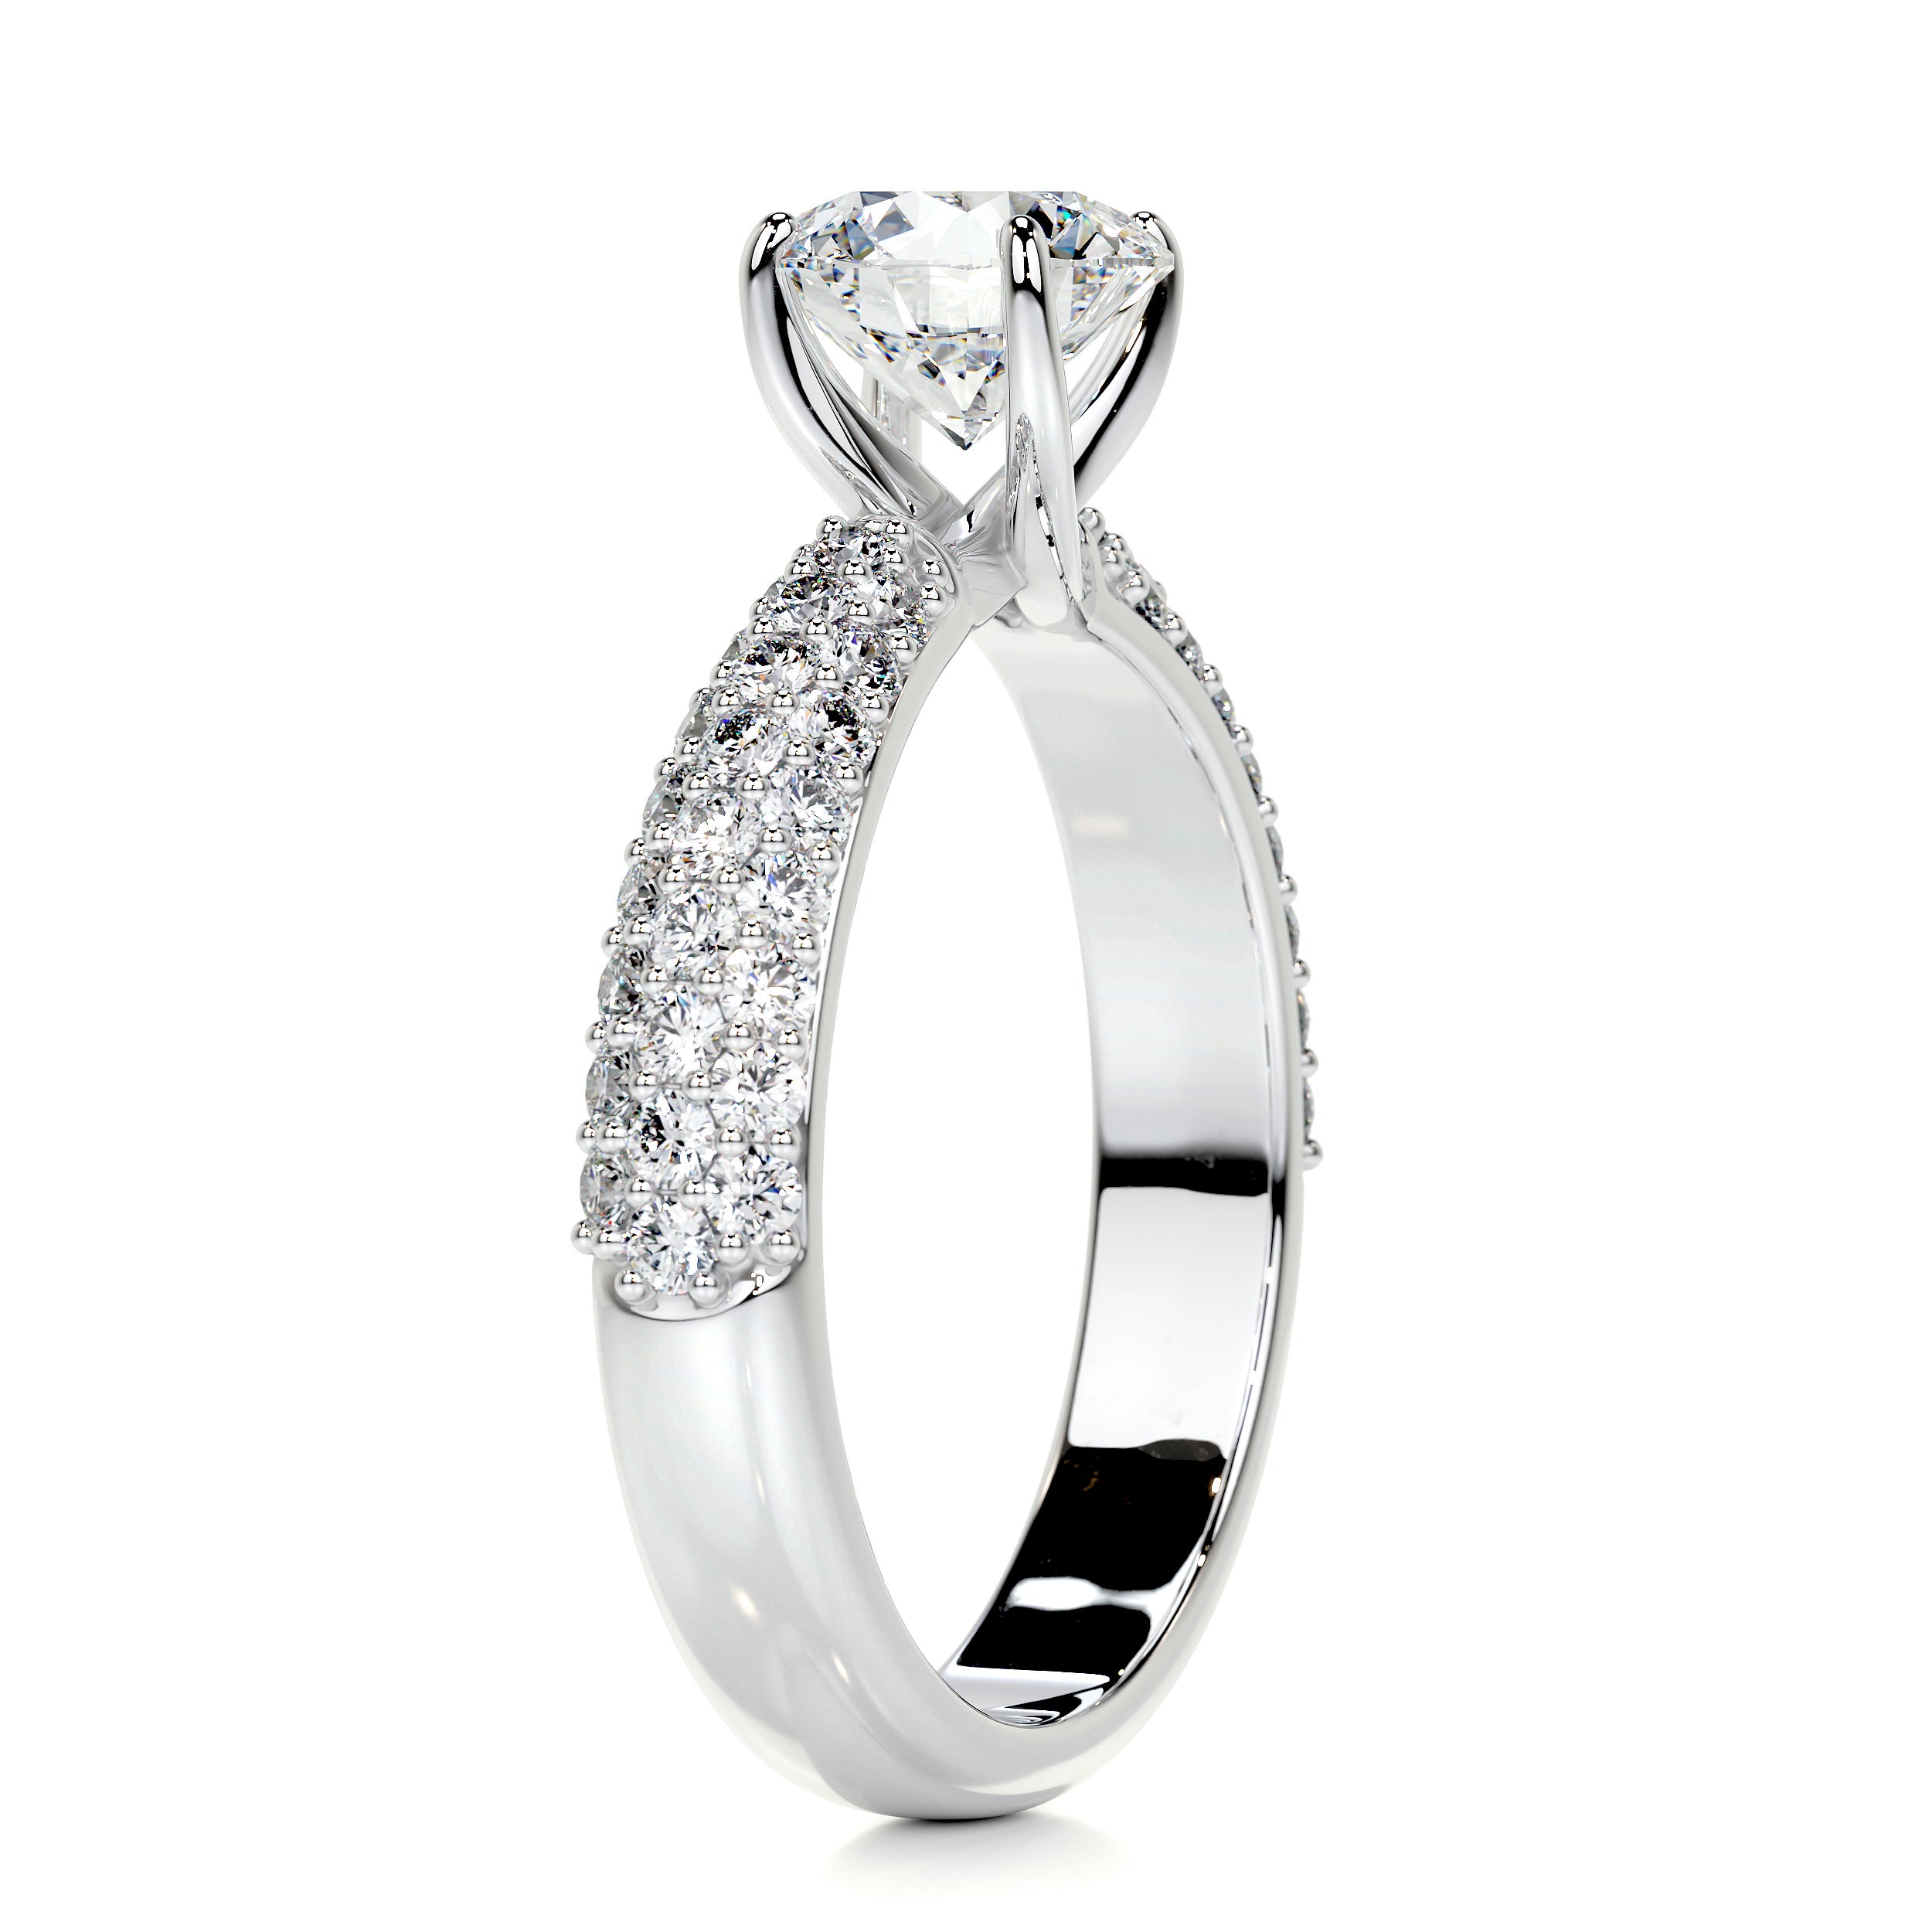 Alora Diamond Engagement Ring   (1.5 Carat) -Platinum